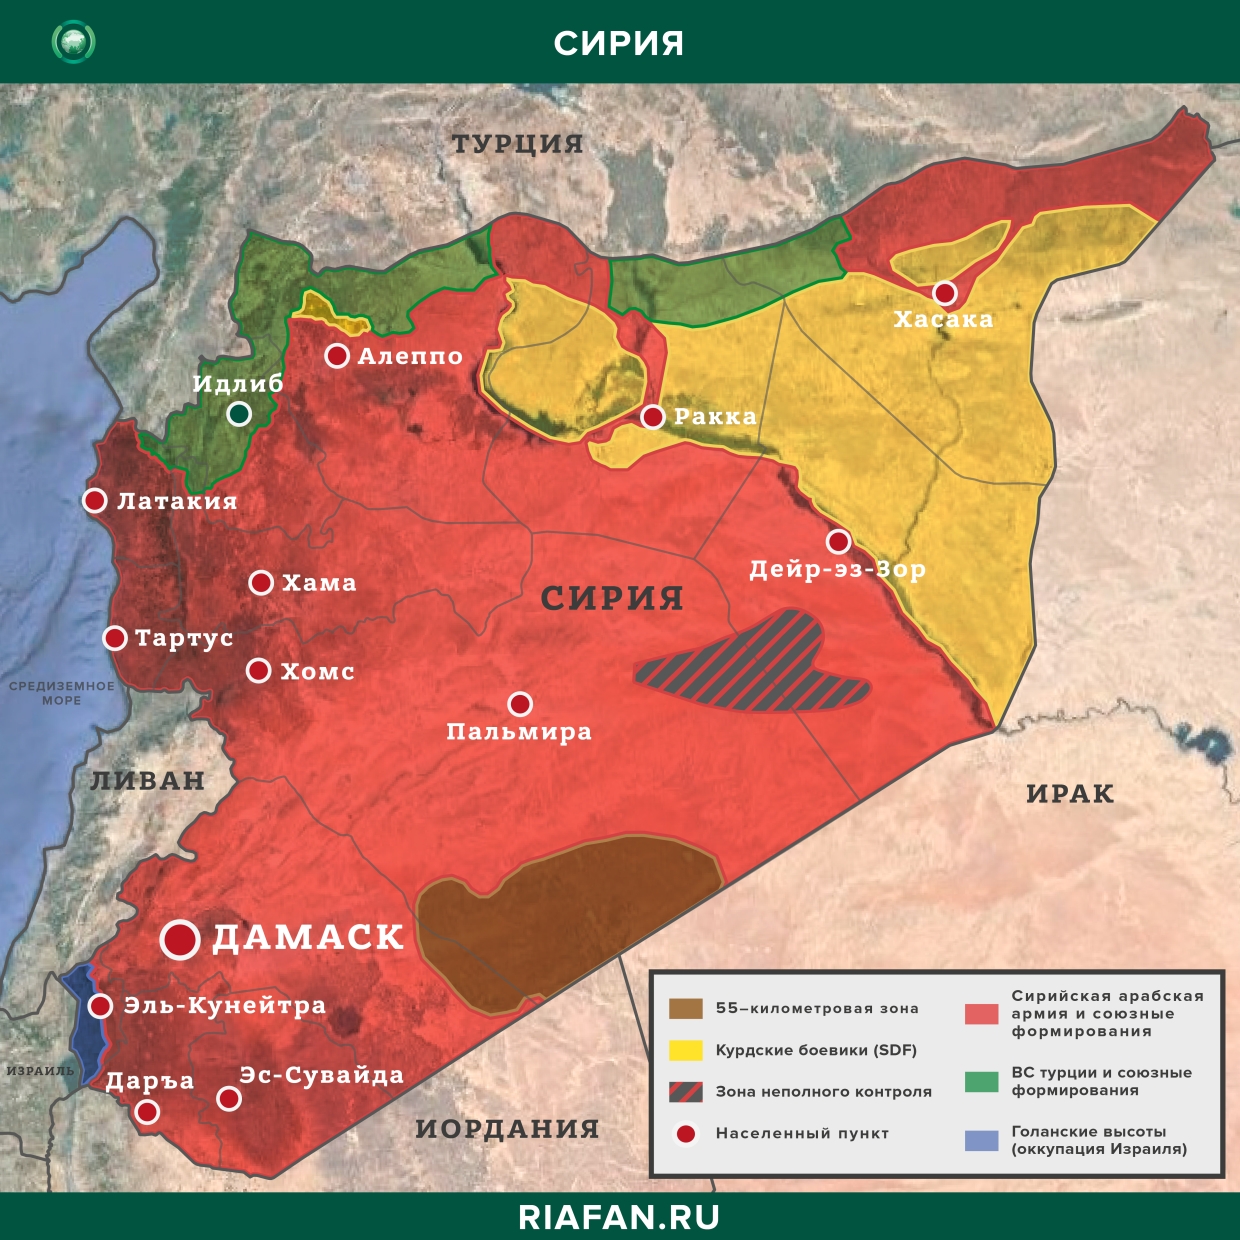 叙利亚每日结果 29 七月 06.00: 波坂恐怖袭击, 土耳其武装部队在伊德利卜与 HTS 领导人举行会议